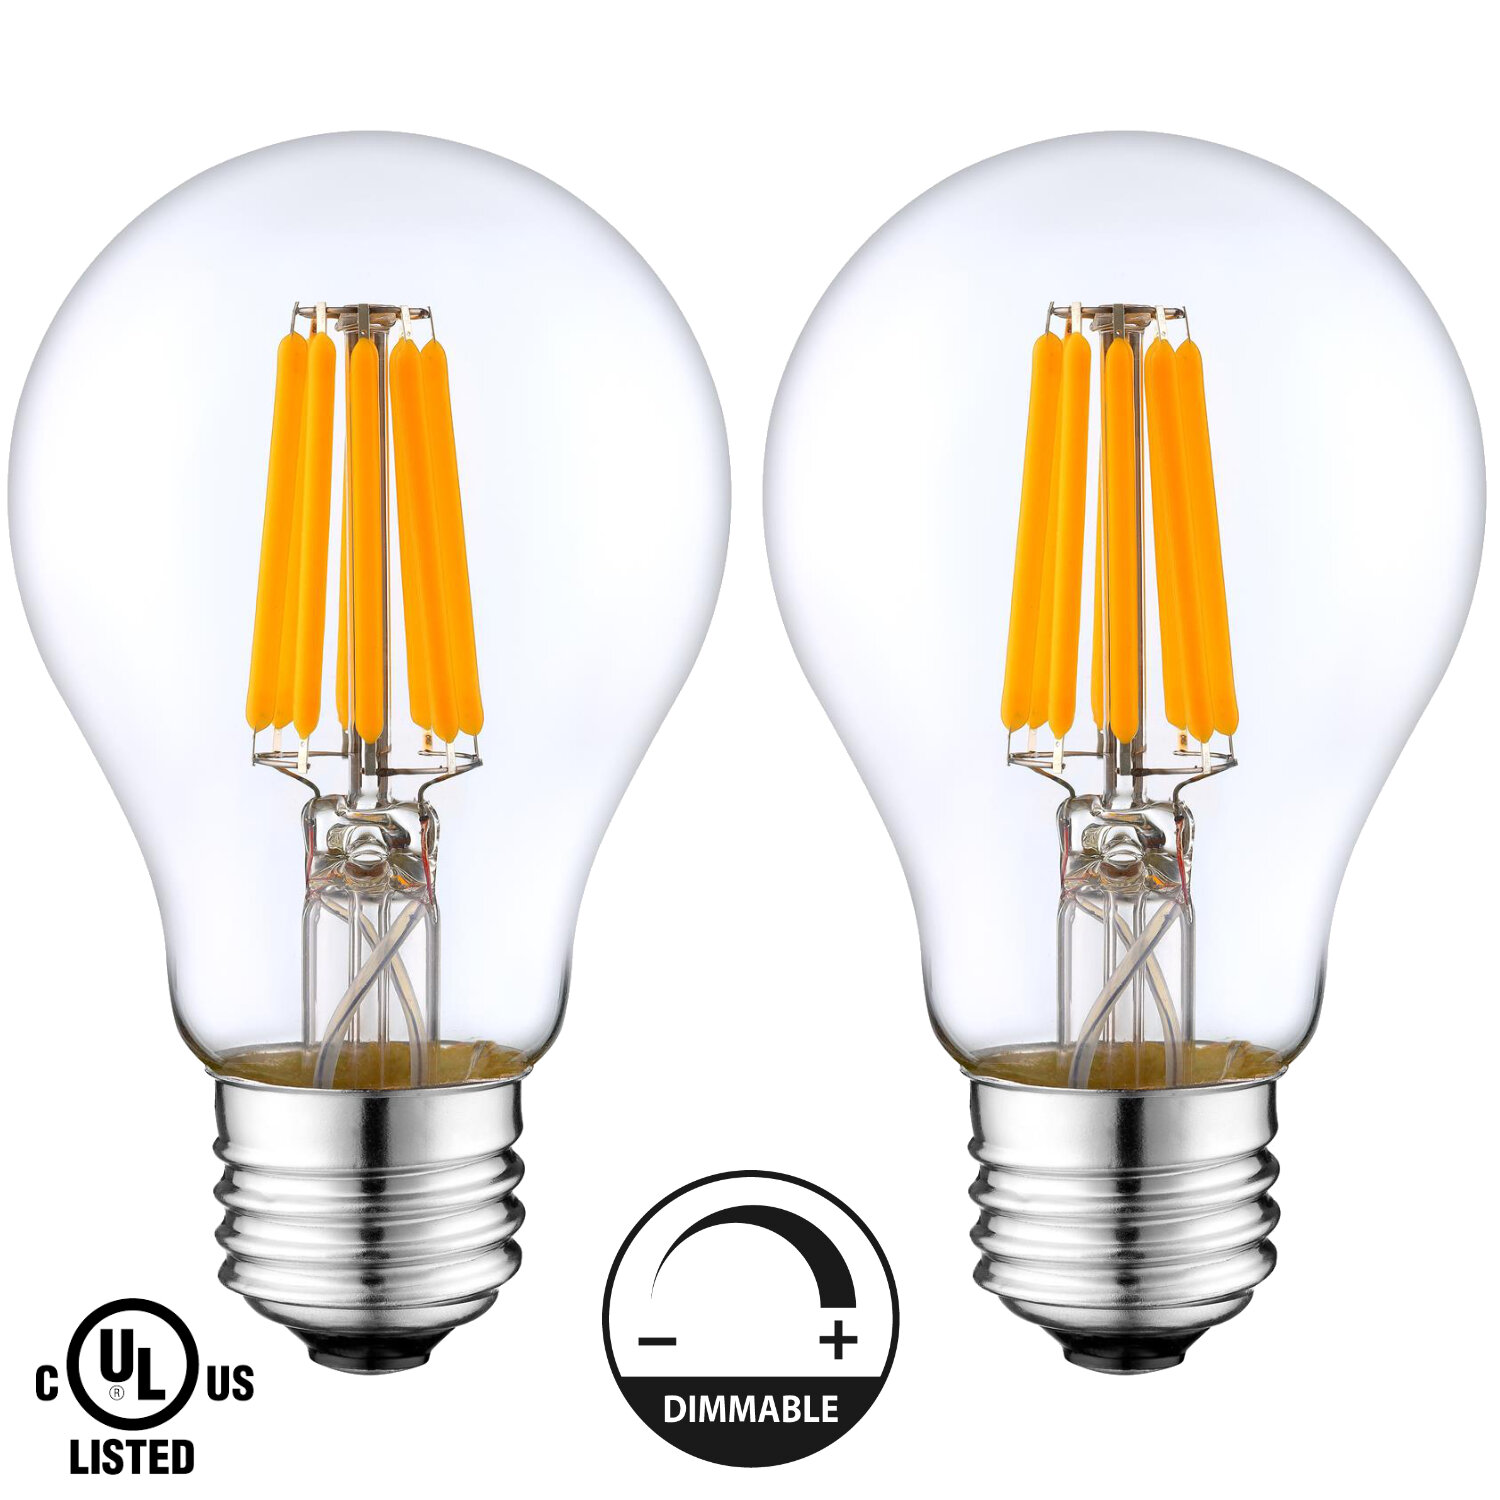 LIGHTACCENTS 8 Watt (60 Watt Equivalent), A19 LED, Dimmable Light Bulb, Warm White (2700K) E26/Medium (Standard) | Wayfair